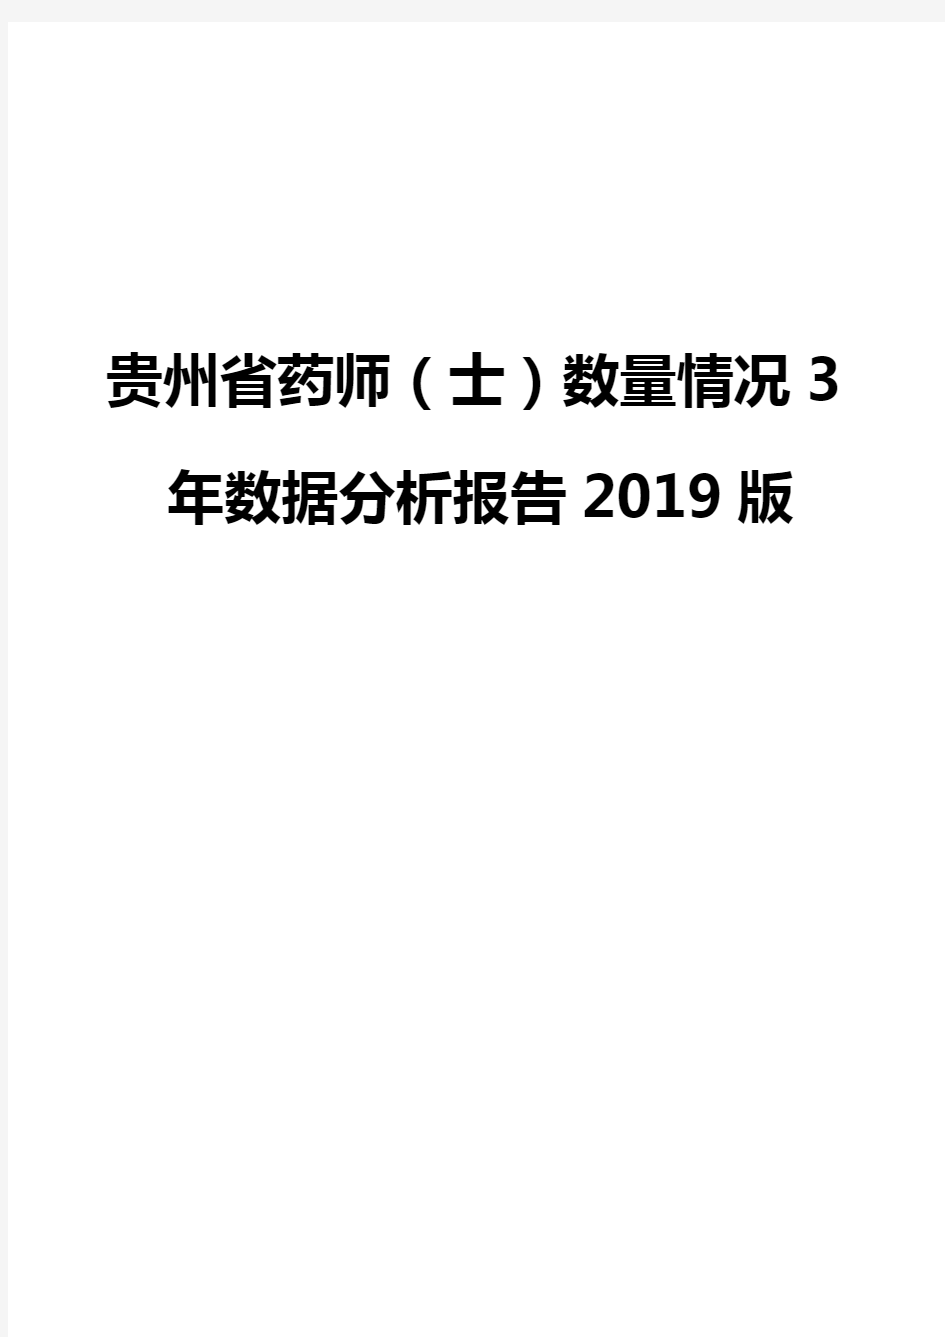 贵州省药师(士)数量情况3年数据分析报告2019版